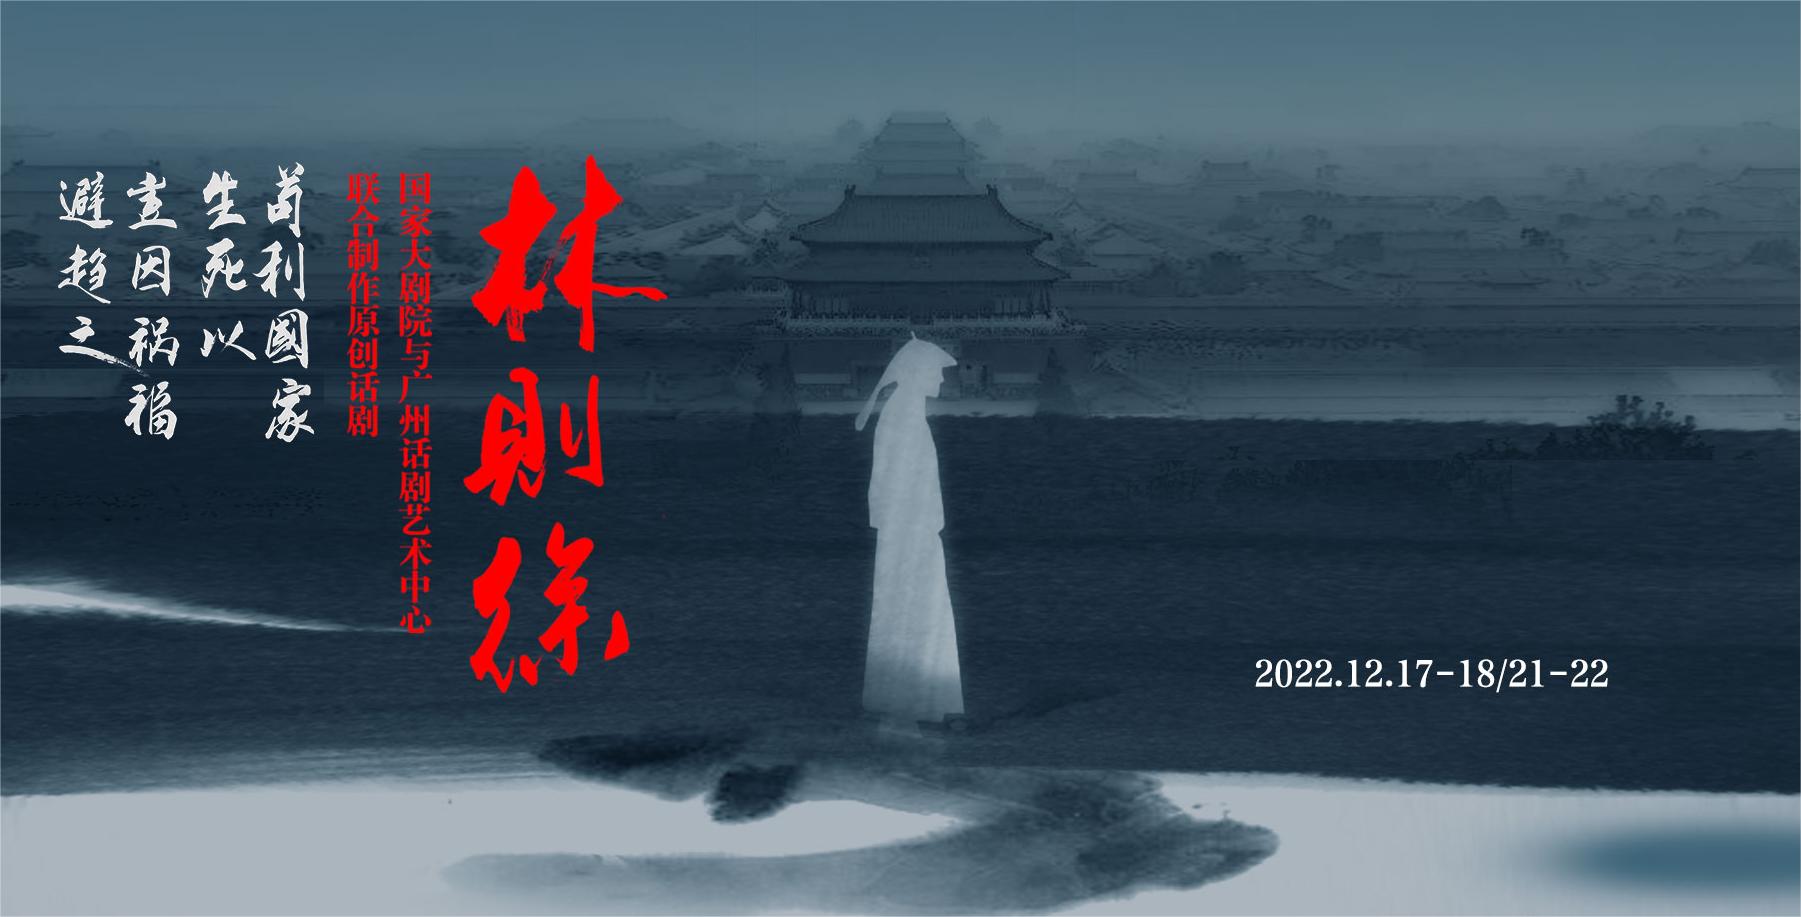 国家大剧院与广州话剧艺术中心联合制作原创话剧《林则徐》